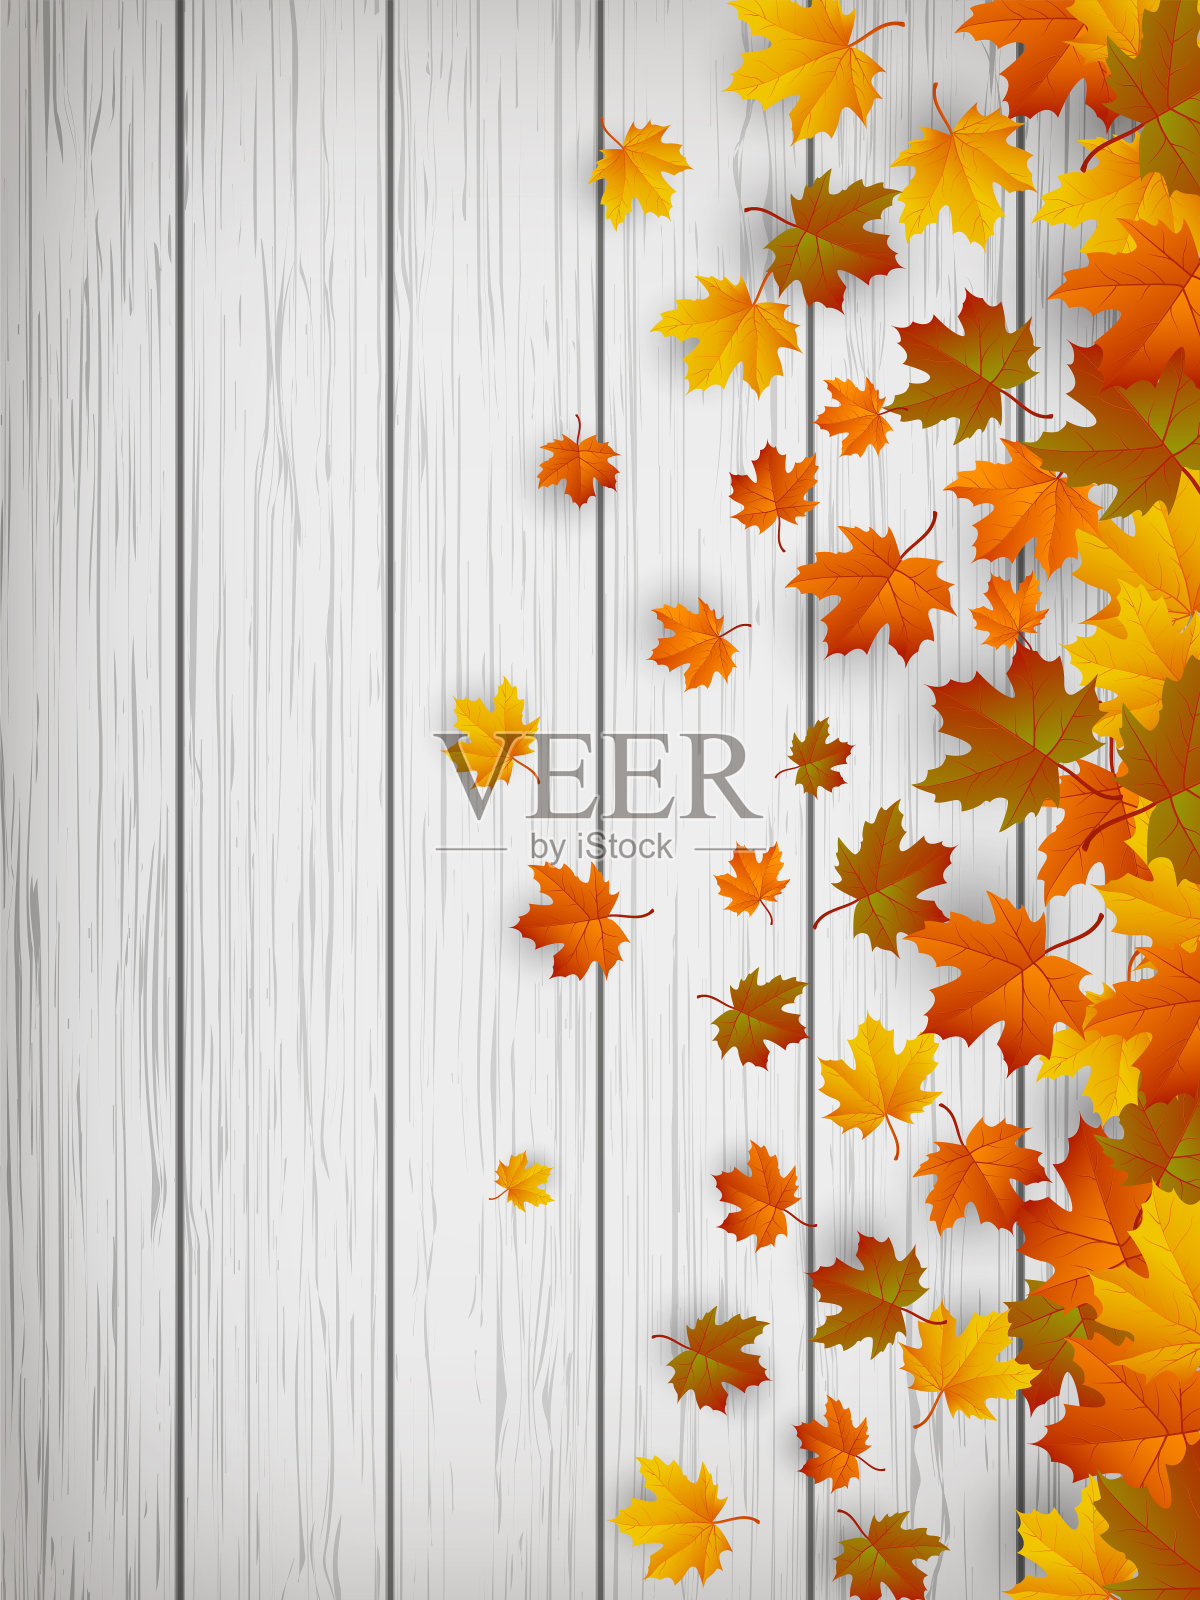 秋天的背景与落叶。秋天的叶子是红色、黄色和橙色的。向量插画图片素材